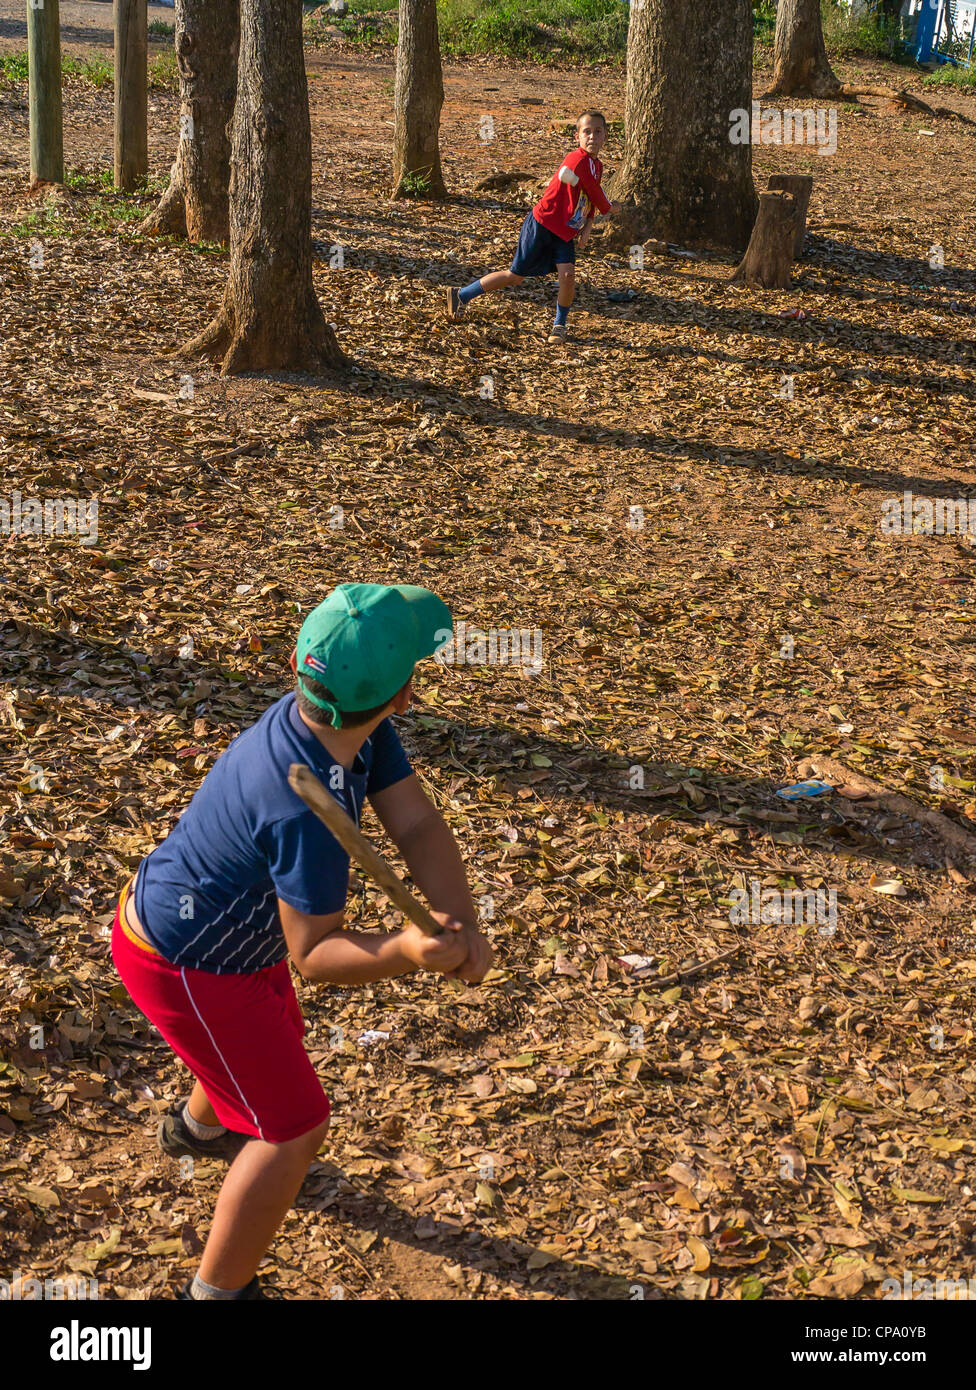 Zwei jungen kubanischen Spiel Stick Ball Baseball mit einem Stab für eine Fledermaus und eine Verschreibung Flasche für einen Ball im westlichen Kuba. Stockfoto